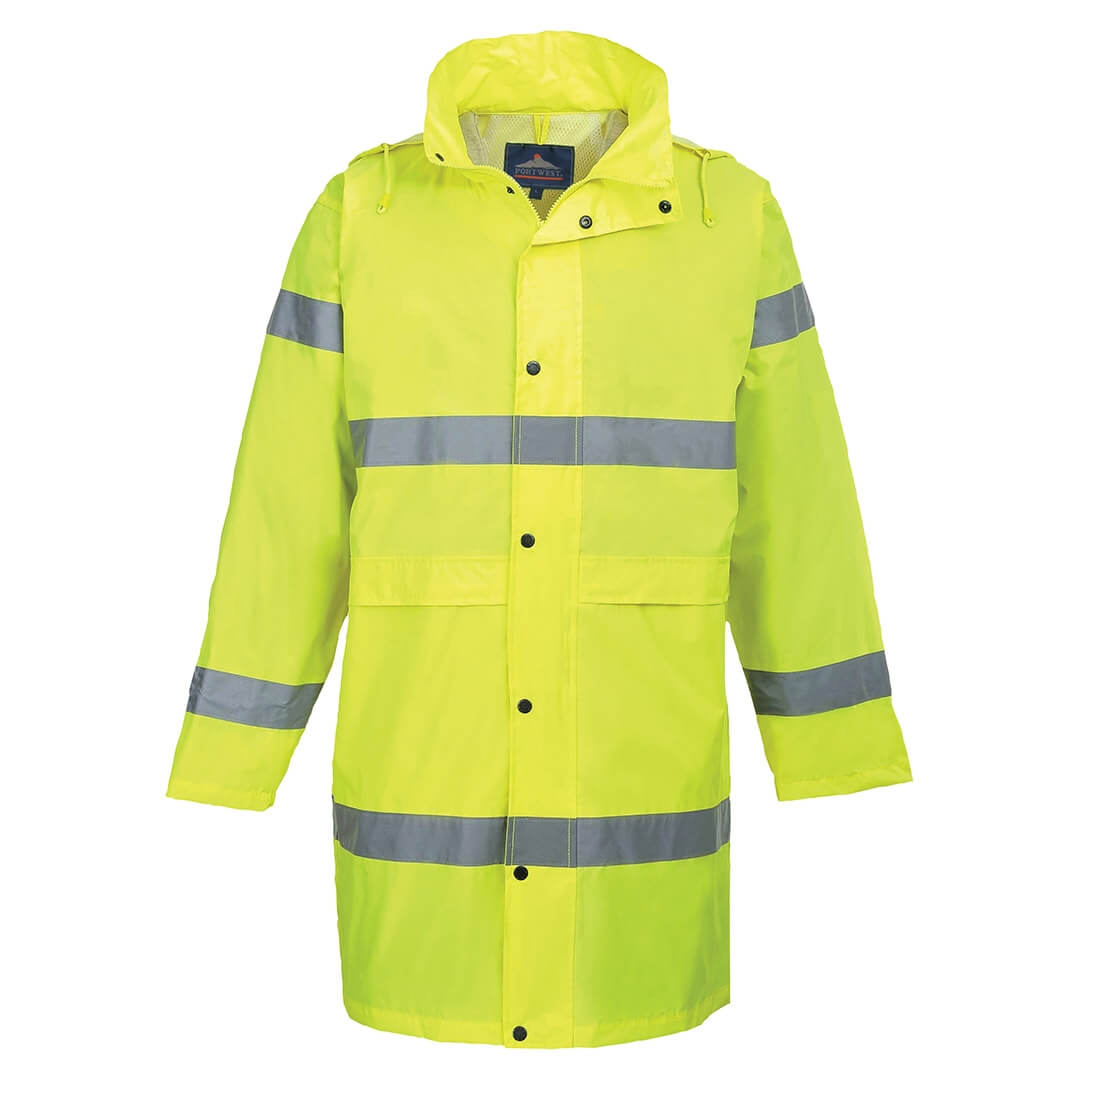 Manteau de pluie Hivis - Les vêtements de protection